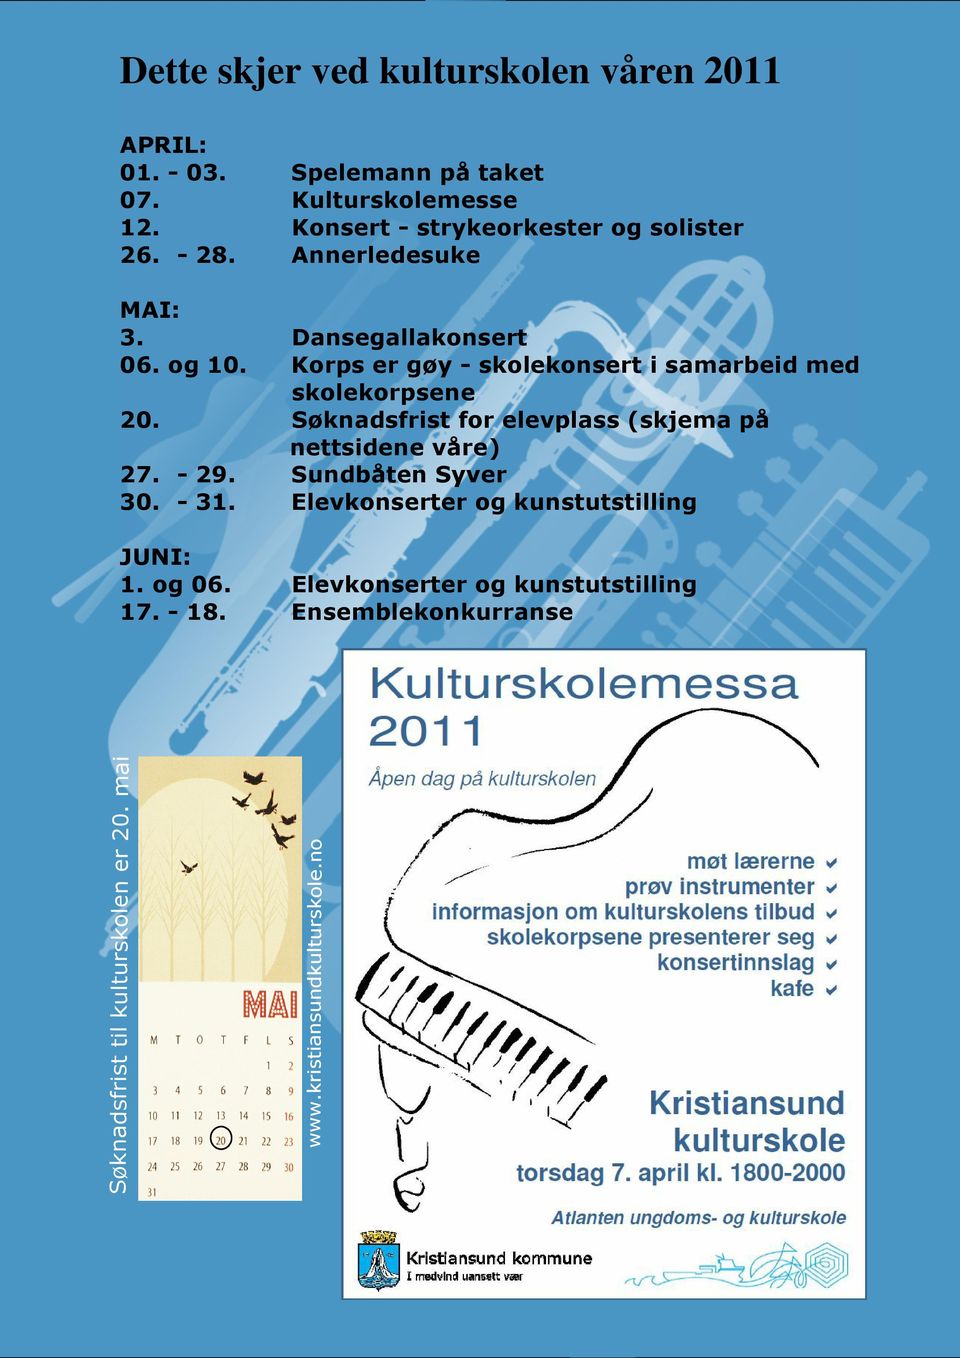 Elevkonserter og kunstutstilling Ensemblekonkurranse Søknadsfrist til kulturskolen er 20. mai 20. www.kristiansundkulturskole.no 27.